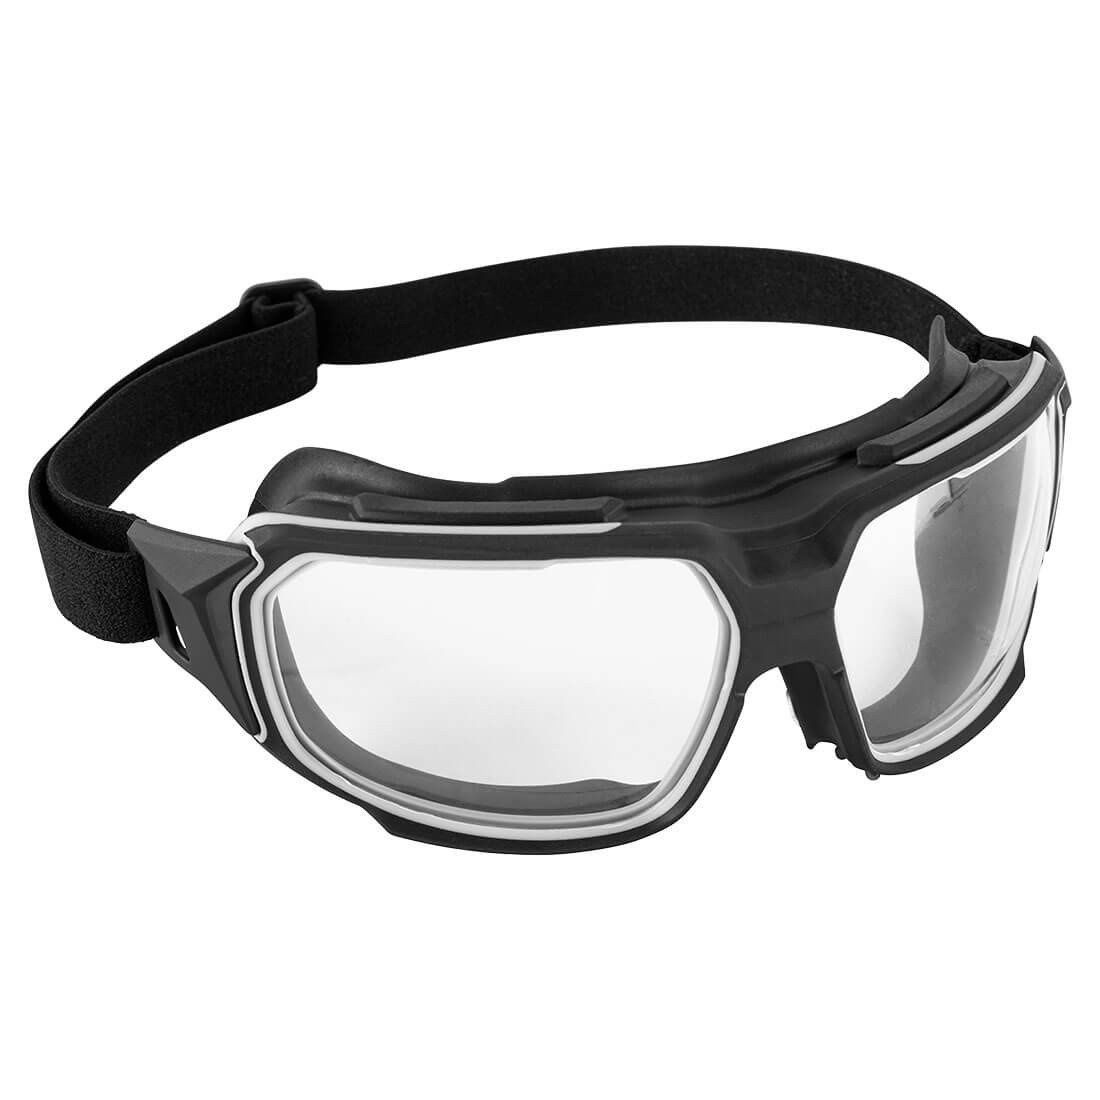 Gafas de seguridad plegables - Equipamientos de protección personal